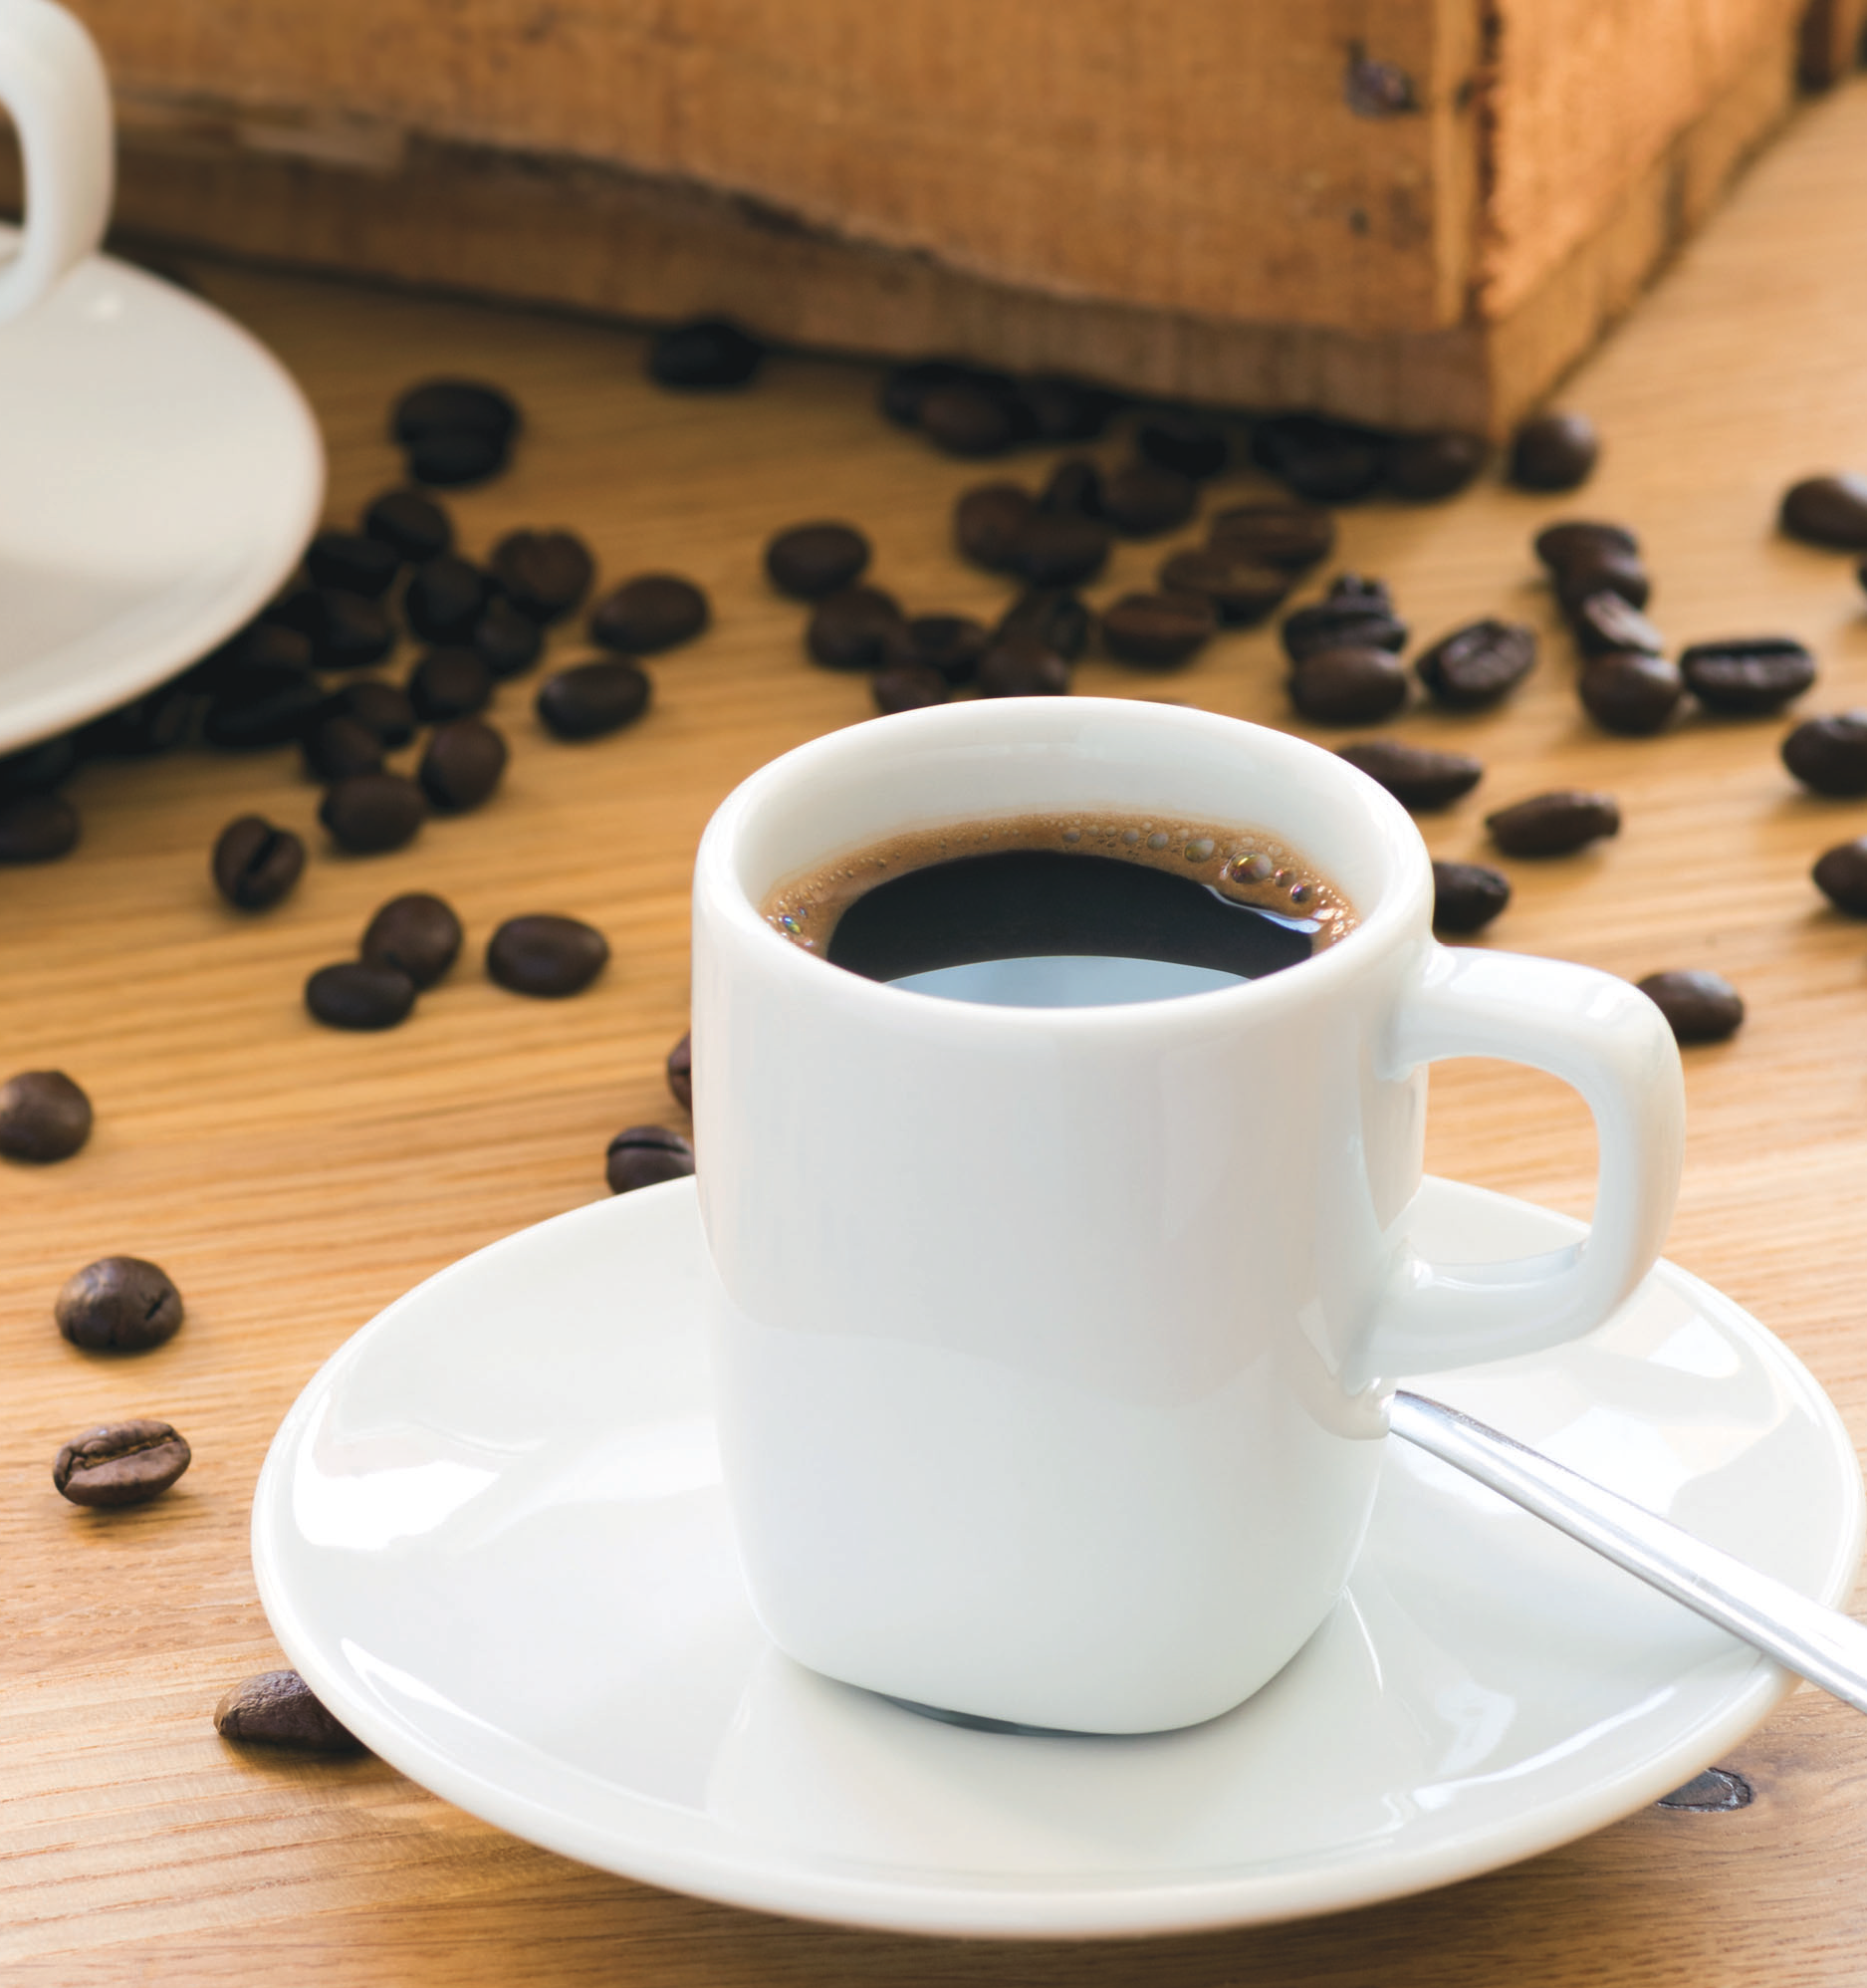 어떤 커피가 진짜 맛있는 커피일까. 우리가 커피를 마시면서 “이 커피 정말 맛 좋다”라고 하는 그 커피는 어떤 맛일까?